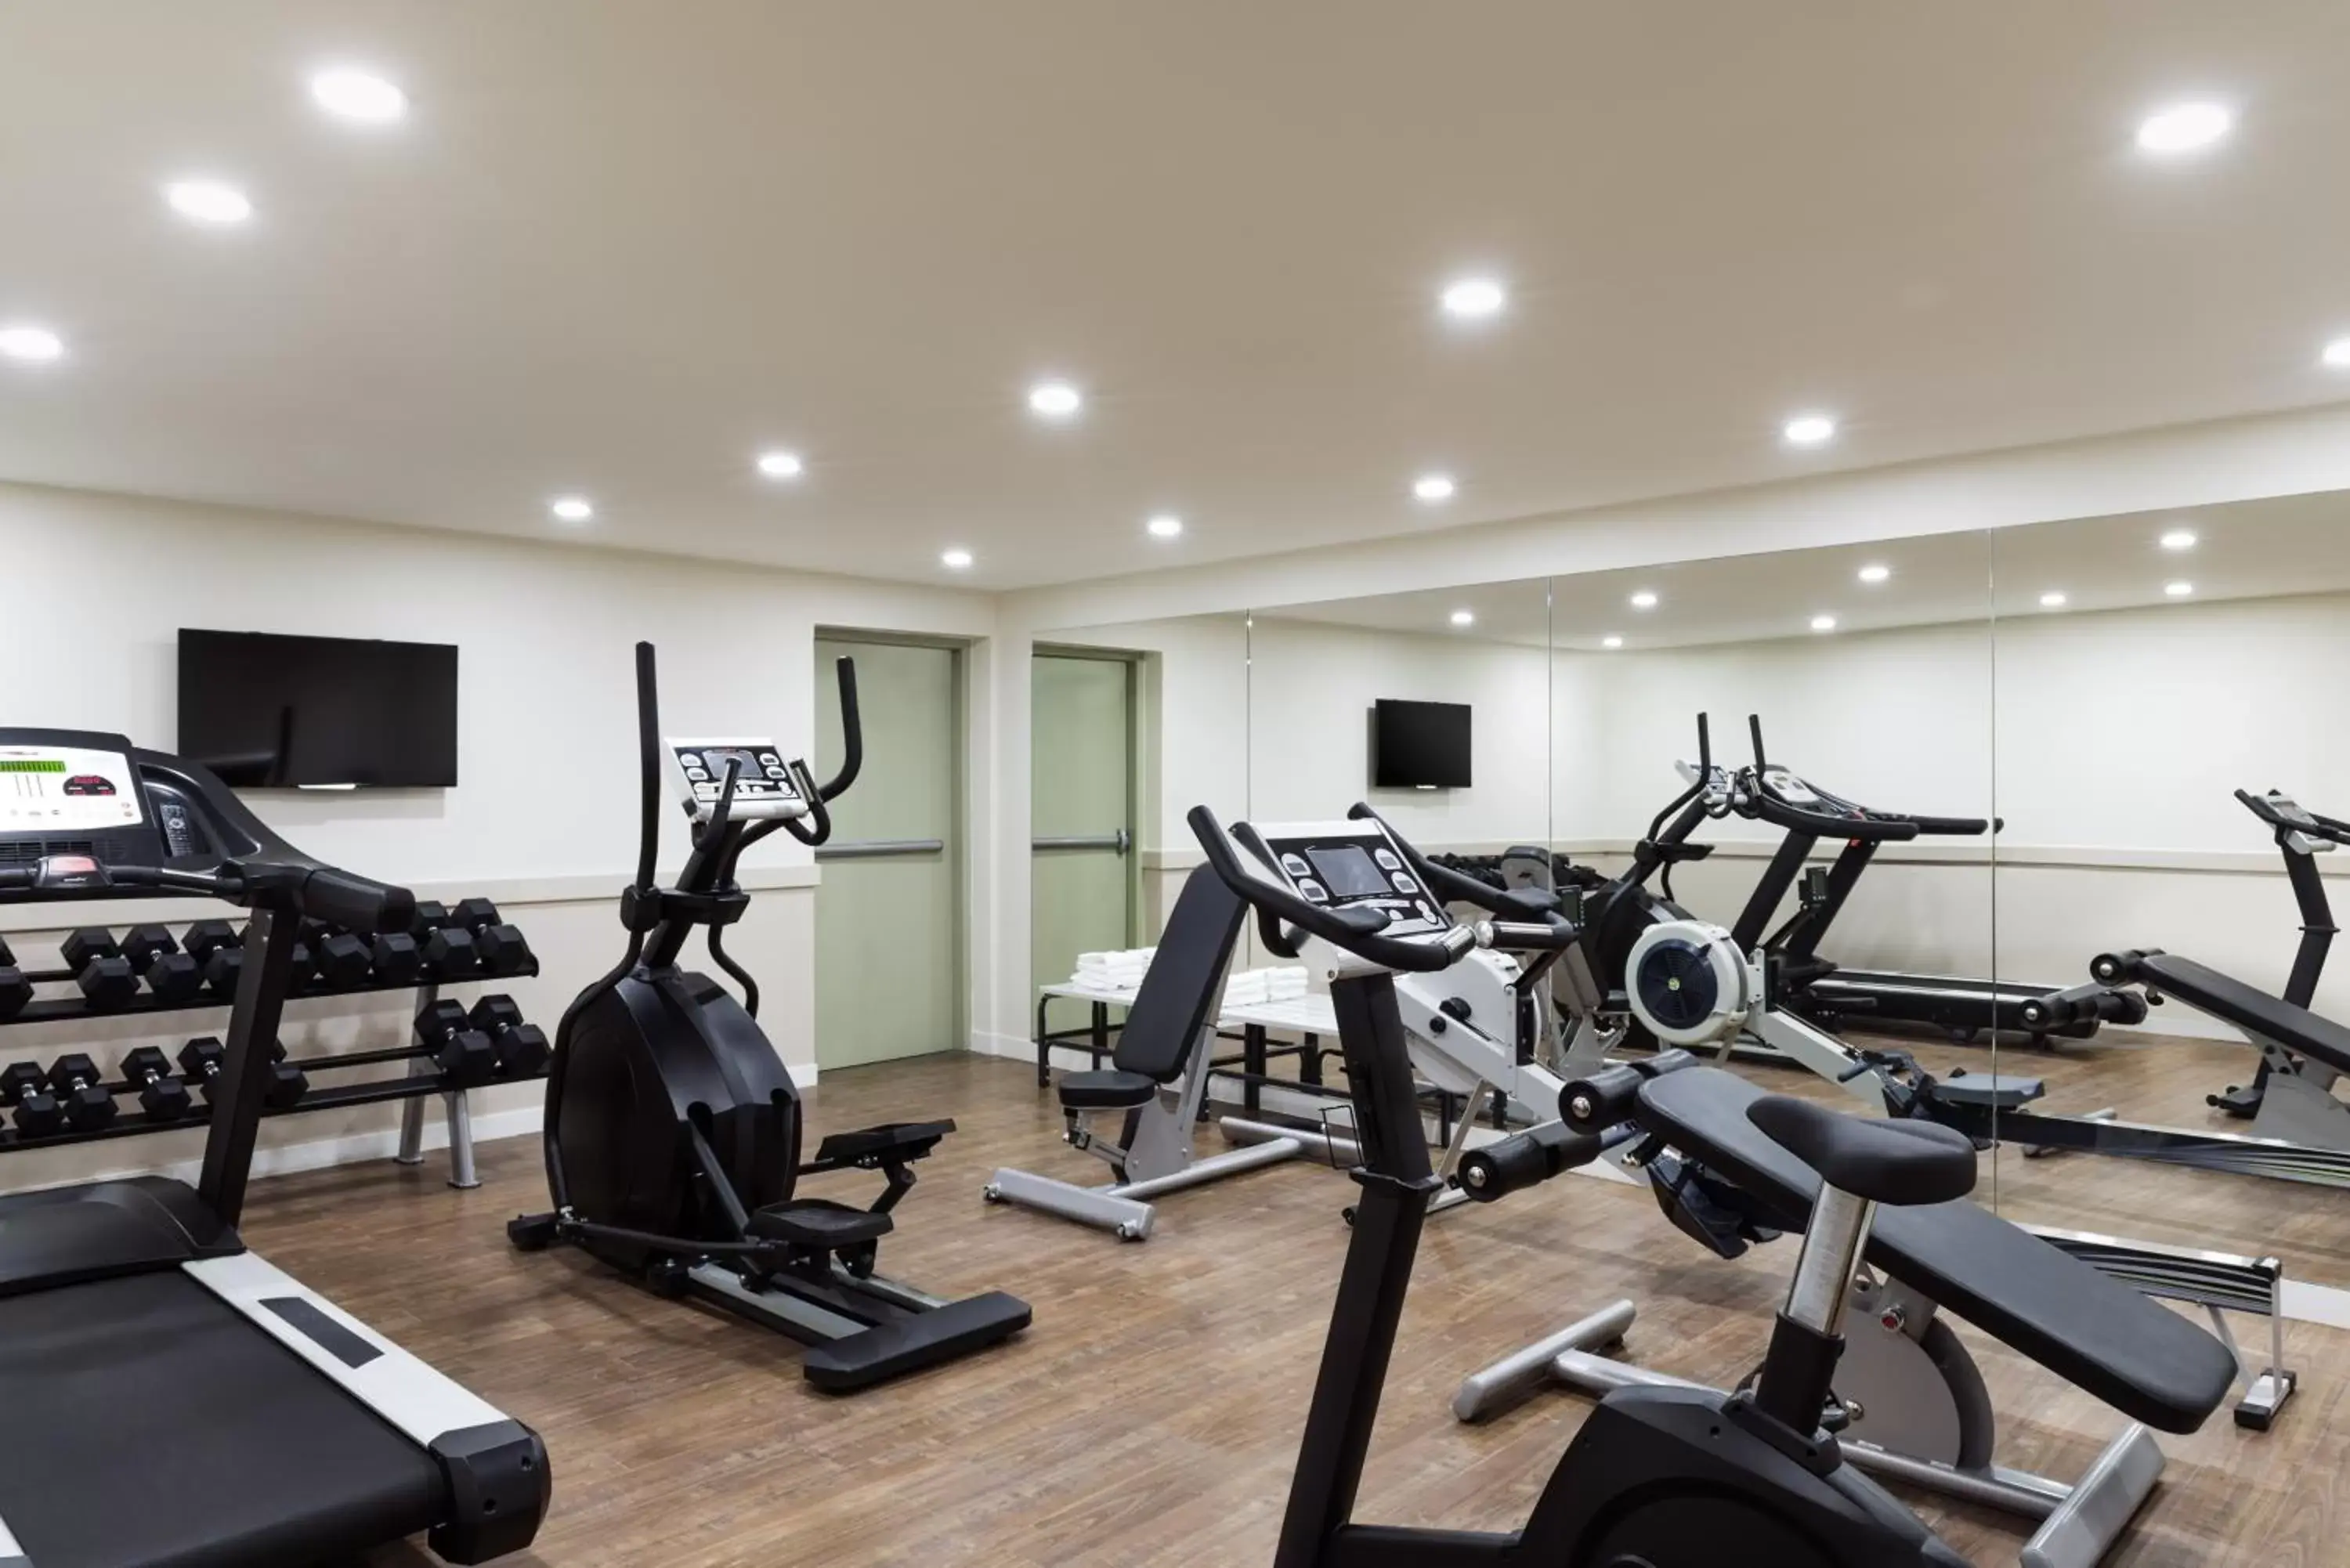 Fitness centre/facilities, Fitness Center/Facilities in Aparthotel Adagio La Defense Courbevoie